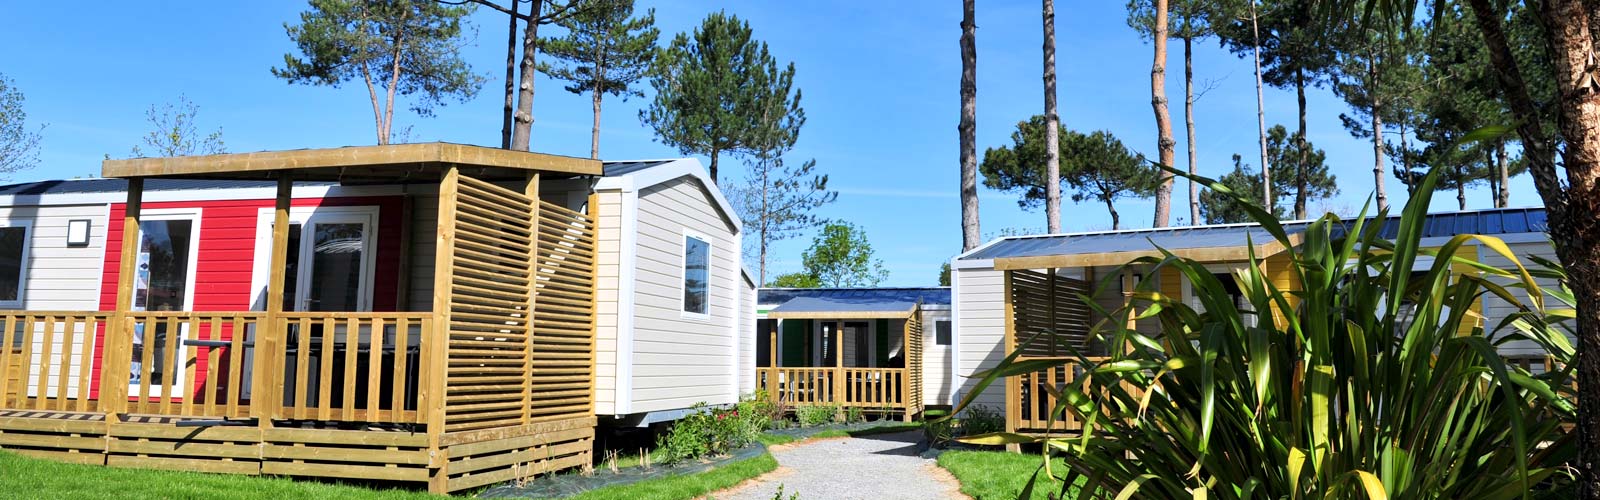 Wohnmobilvermietung auf dem Campingplatz Le Fief in Saint-Brevin